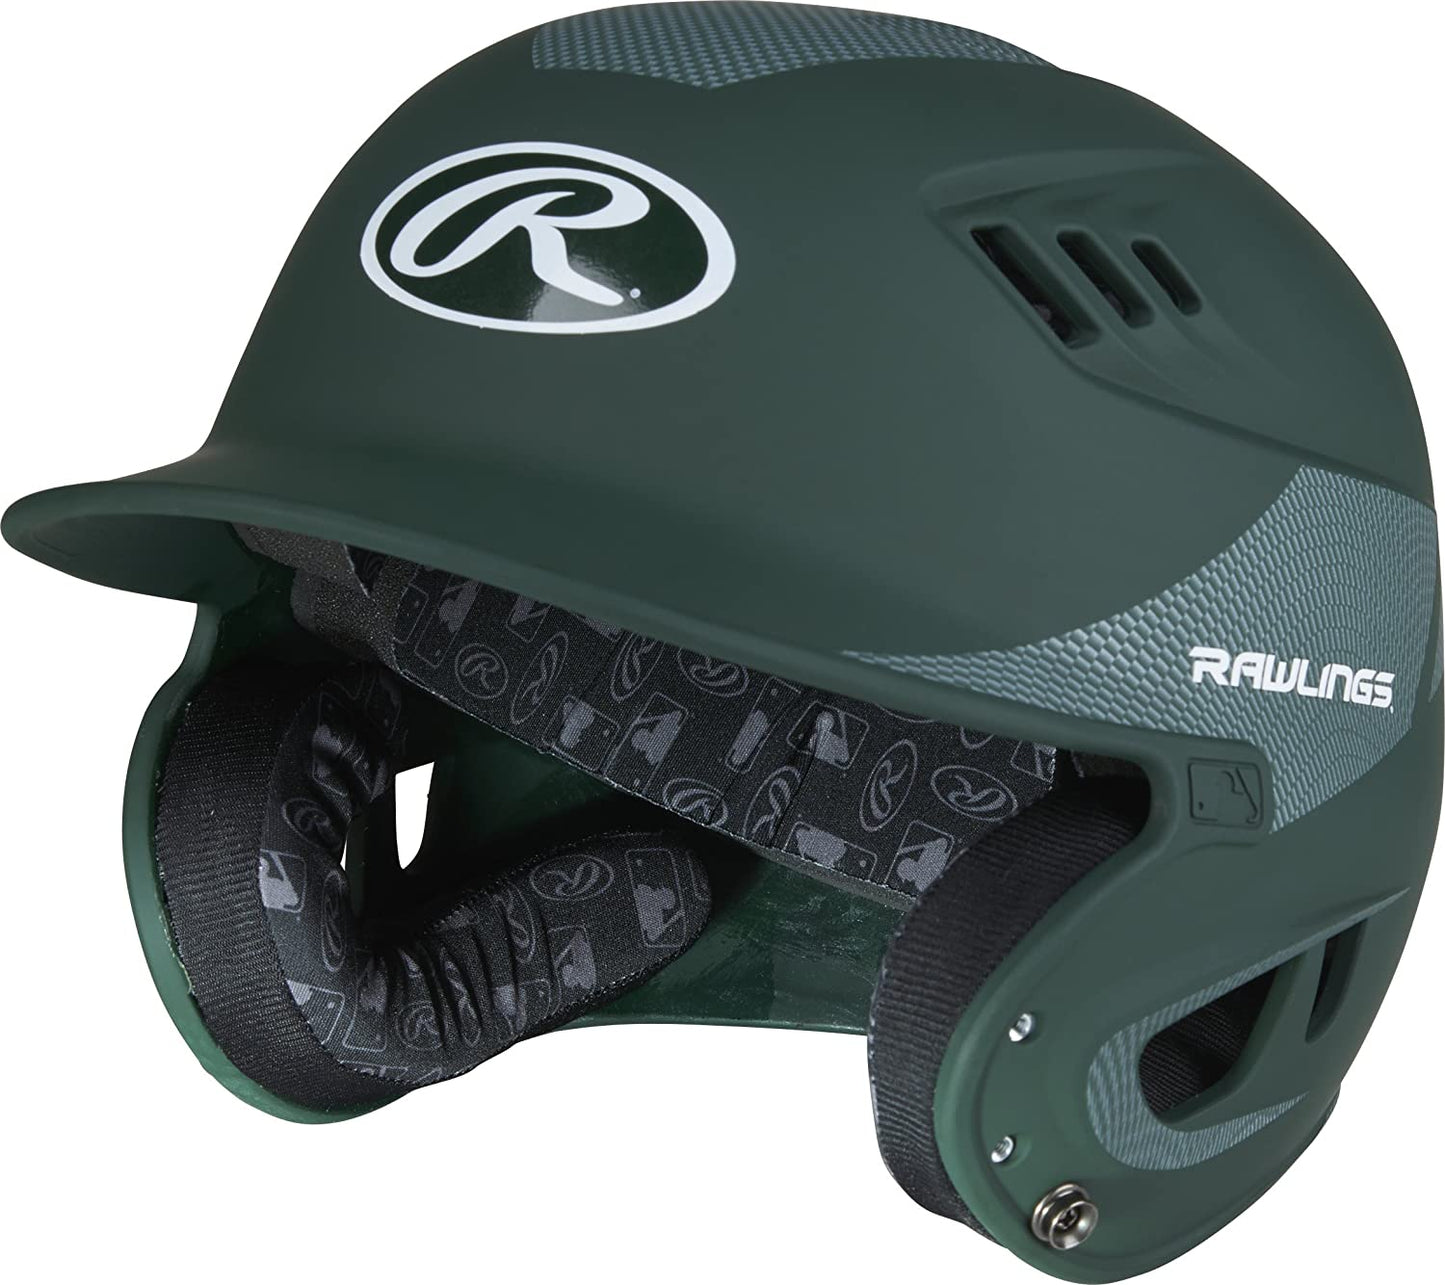 Rawlings Velo Senior Batting Helmet